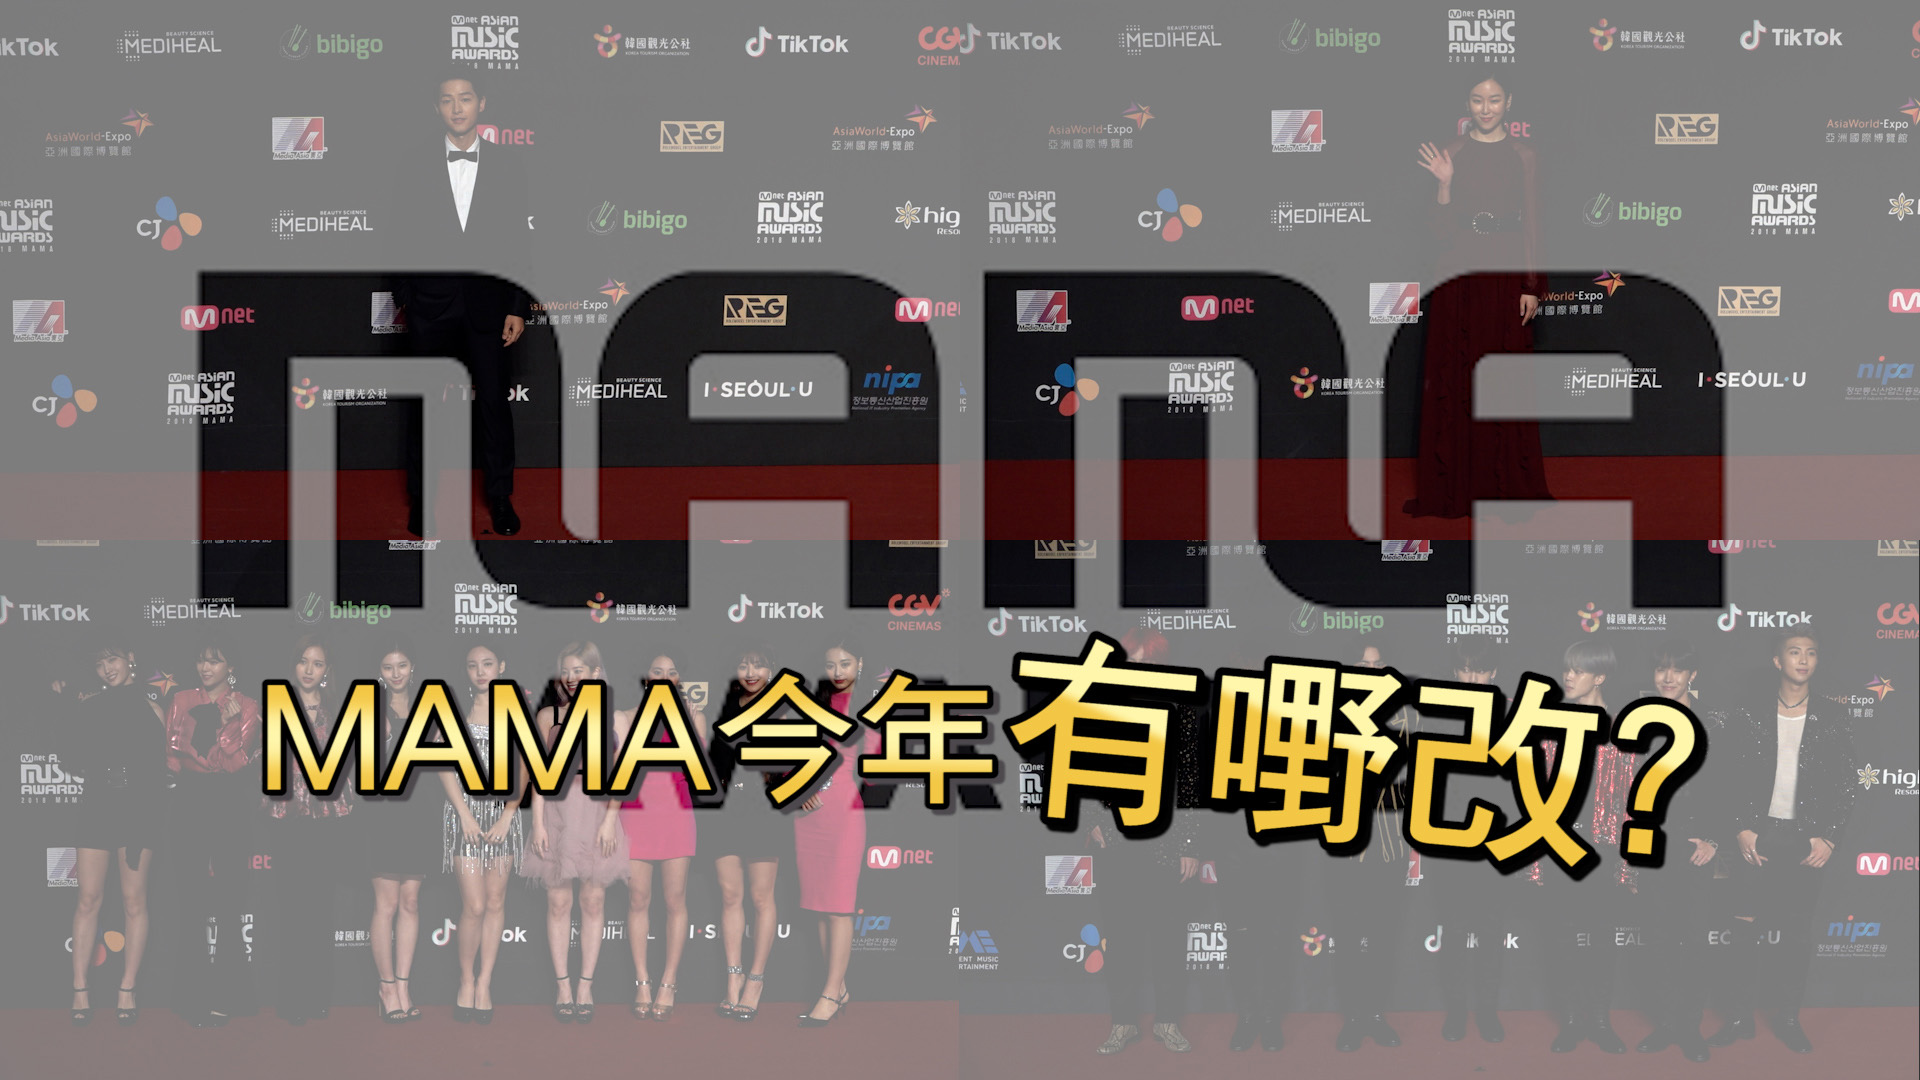 沿用12年 韓國年度音樂盛事MAMA宣布改名